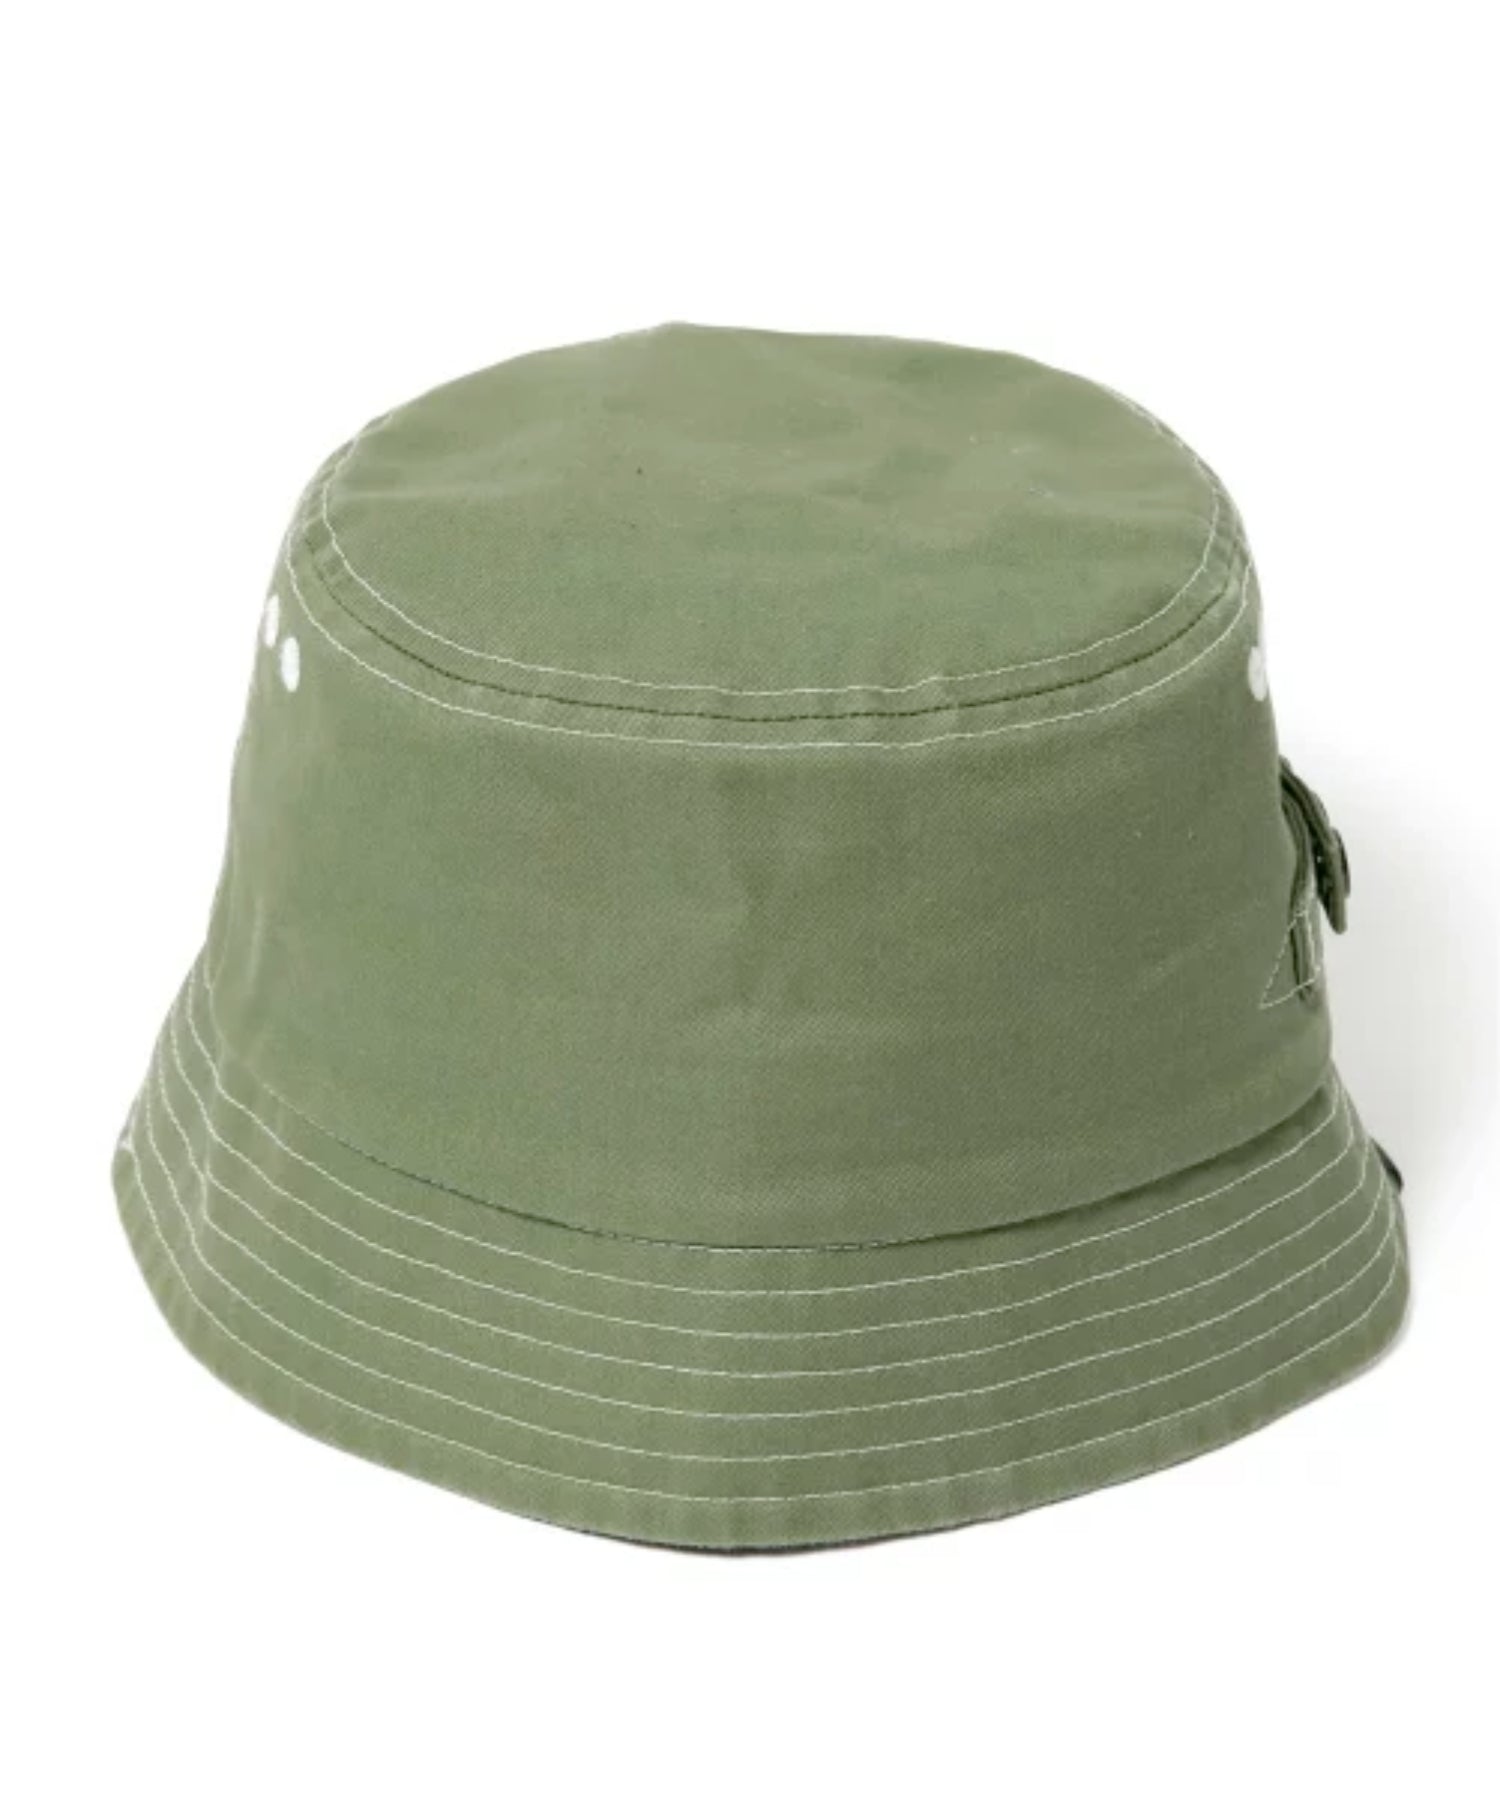 หมวกบักเก็ต XLARGE รุ่น Adjustable Bucket Hat